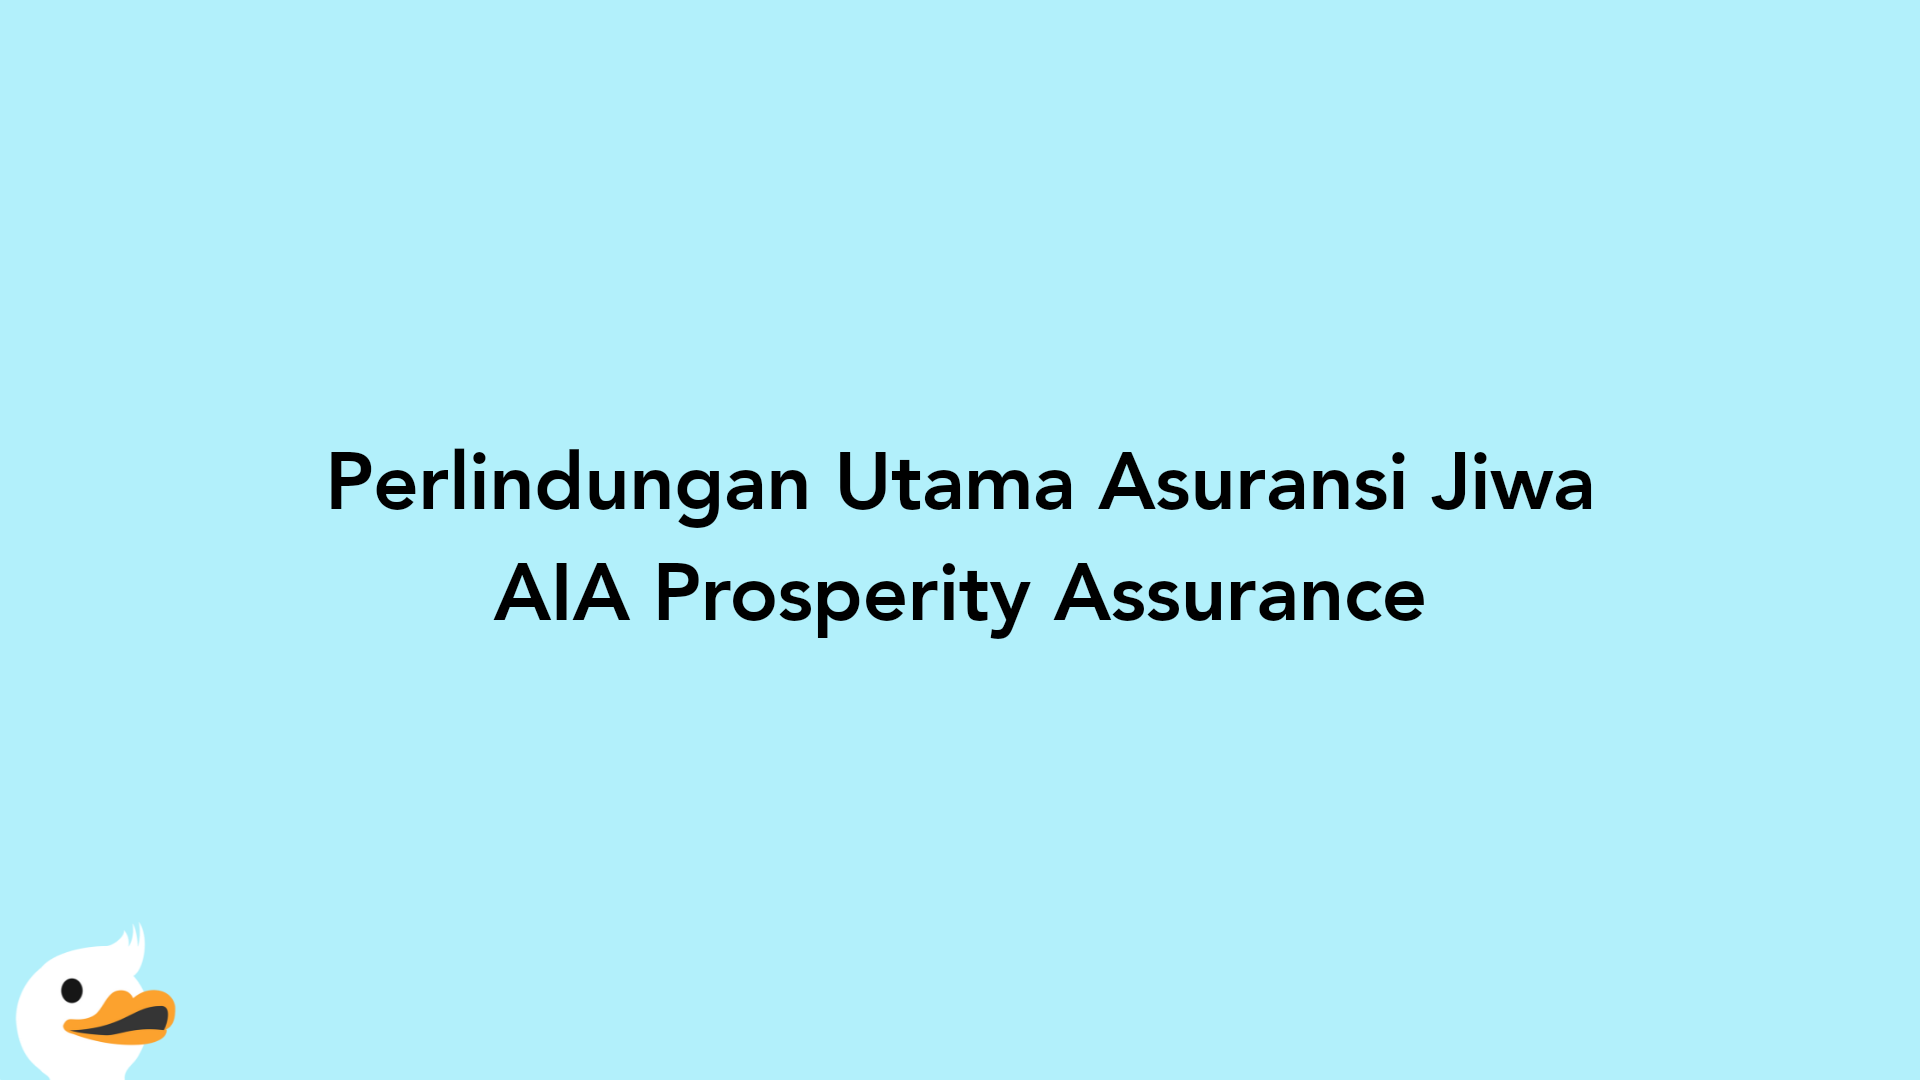 Perlindungan Utama Asuransi Jiwa AIA Prosperity Assurance